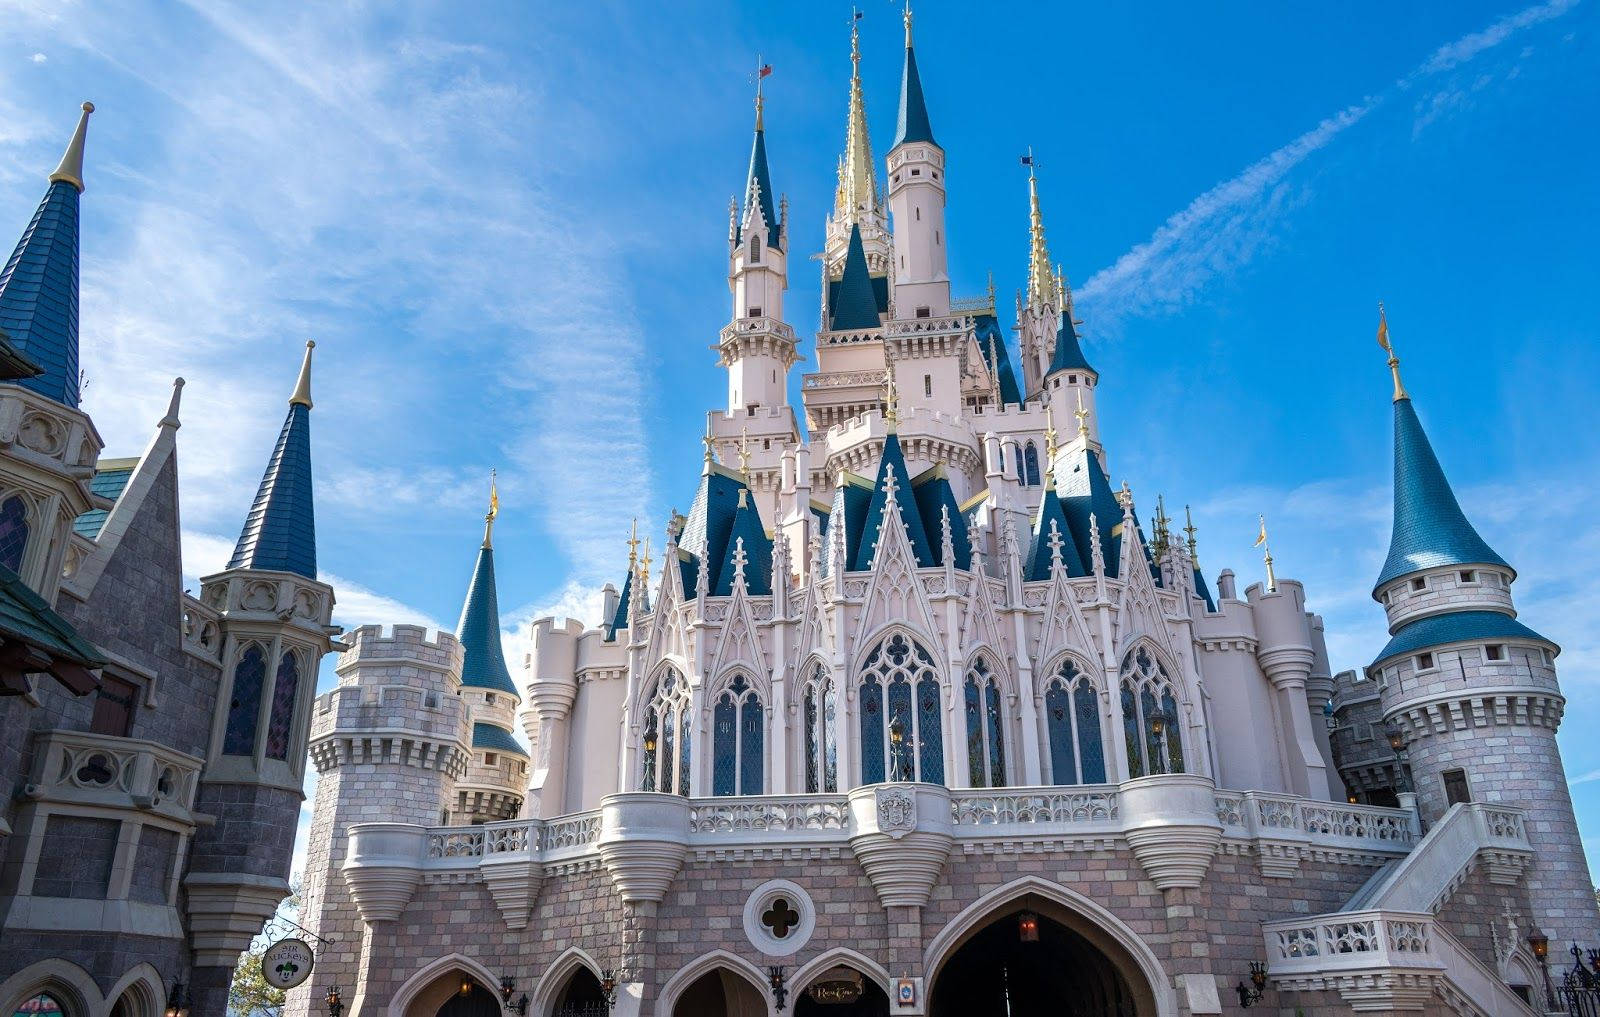 Majestic Disney World Castle Wallpaper